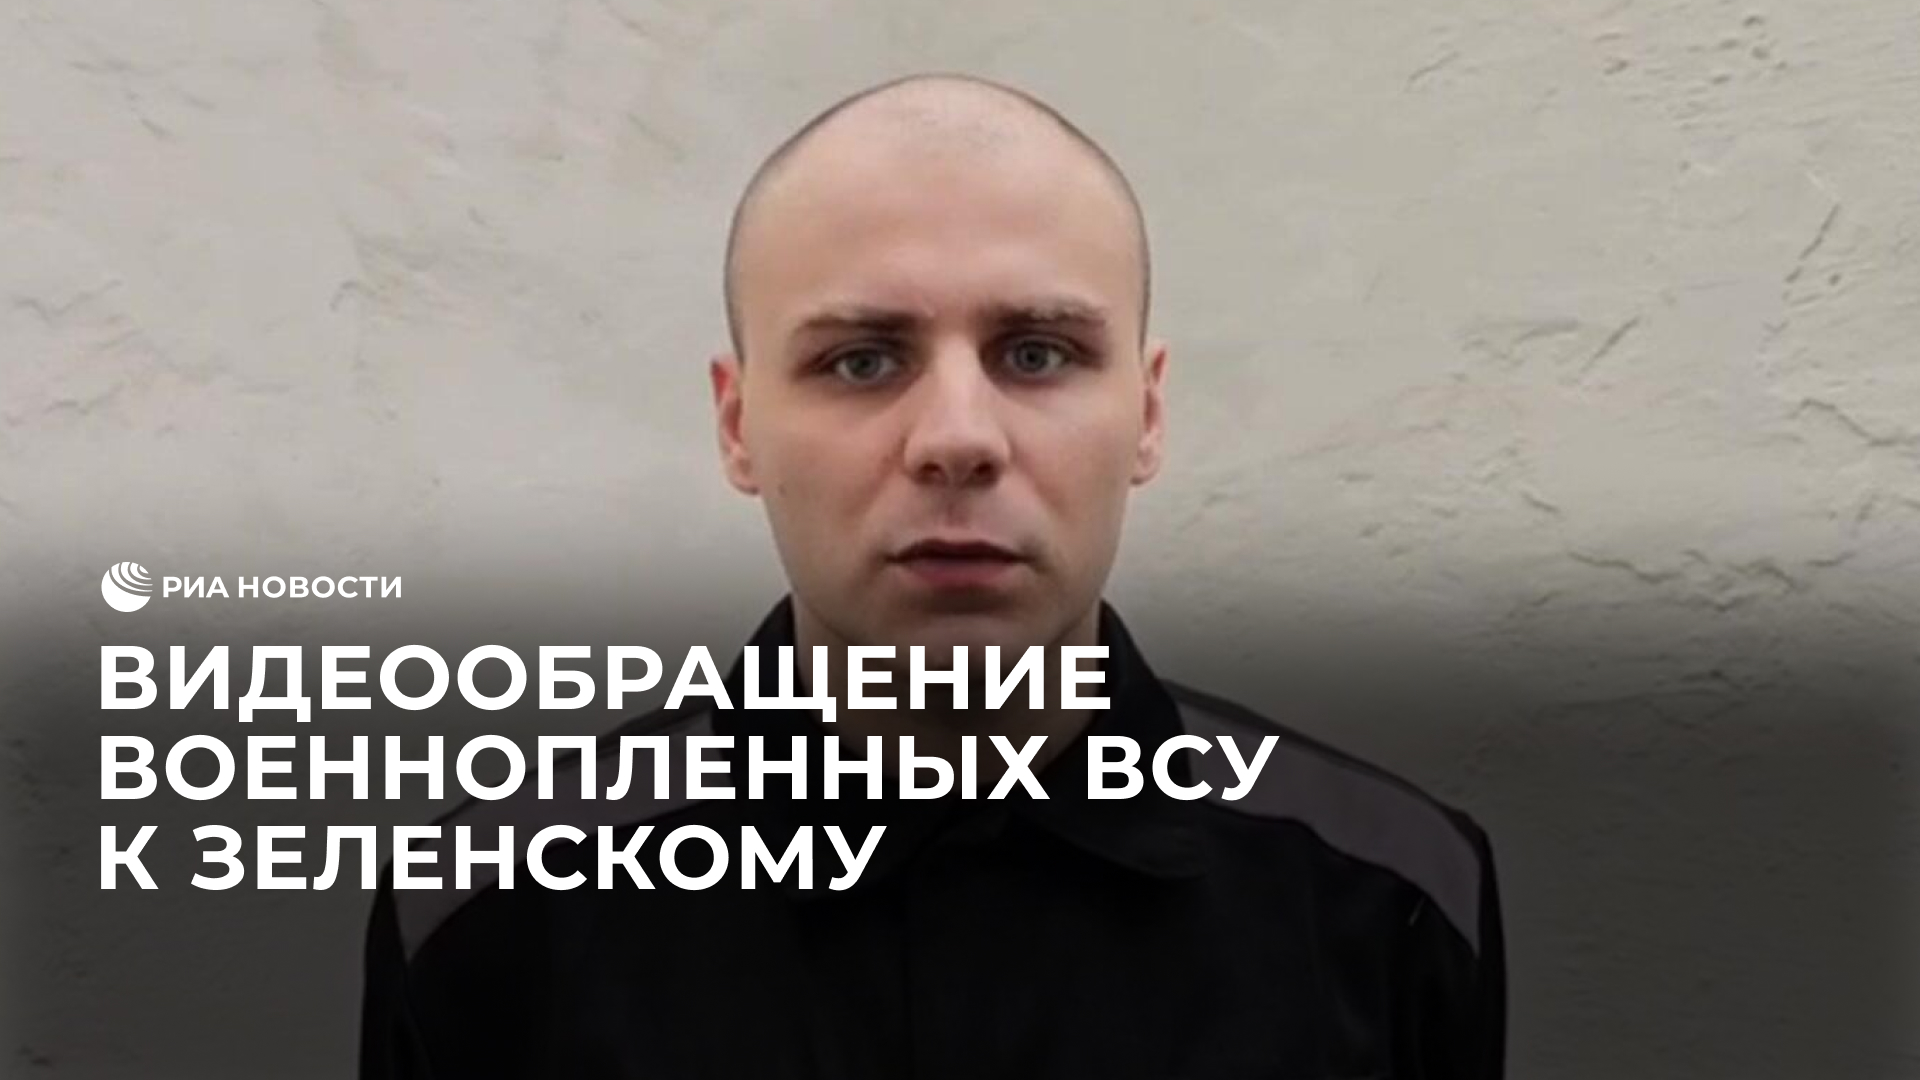 Видеообращение военнопленных элитного подразделения ВСУ к Зеленскому